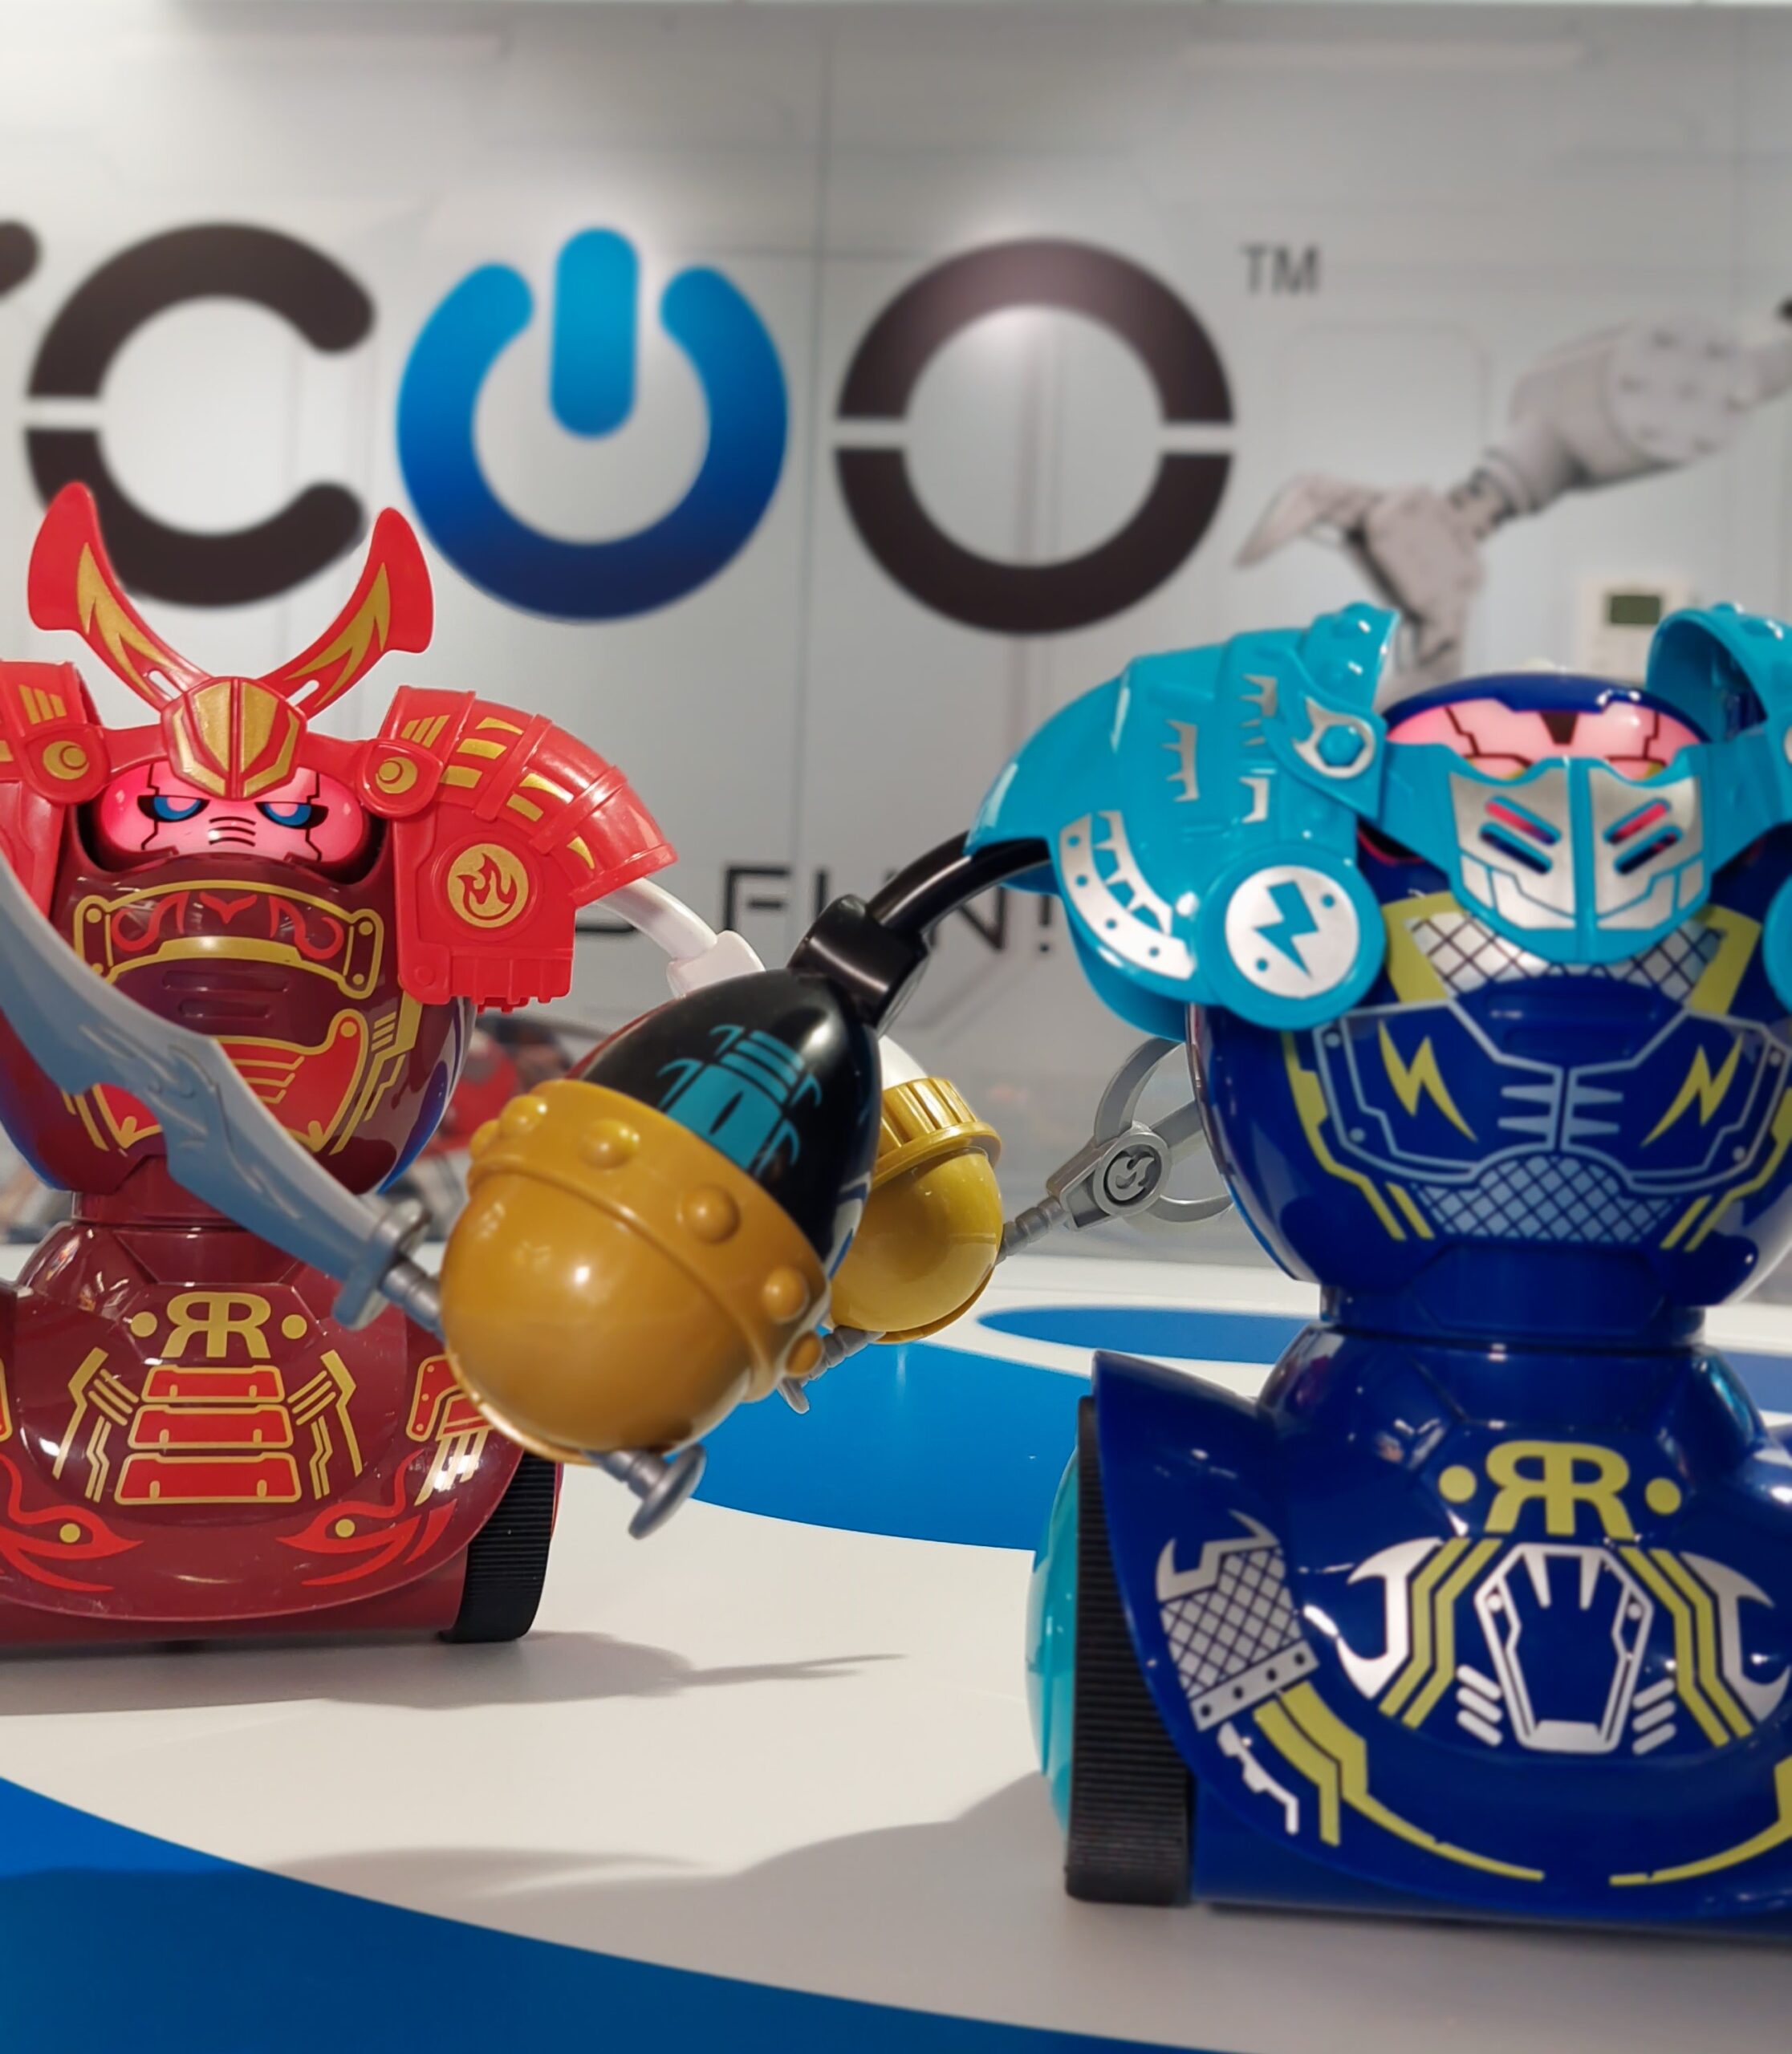 YCOO Robot Kombat Samouraï – Silverlit